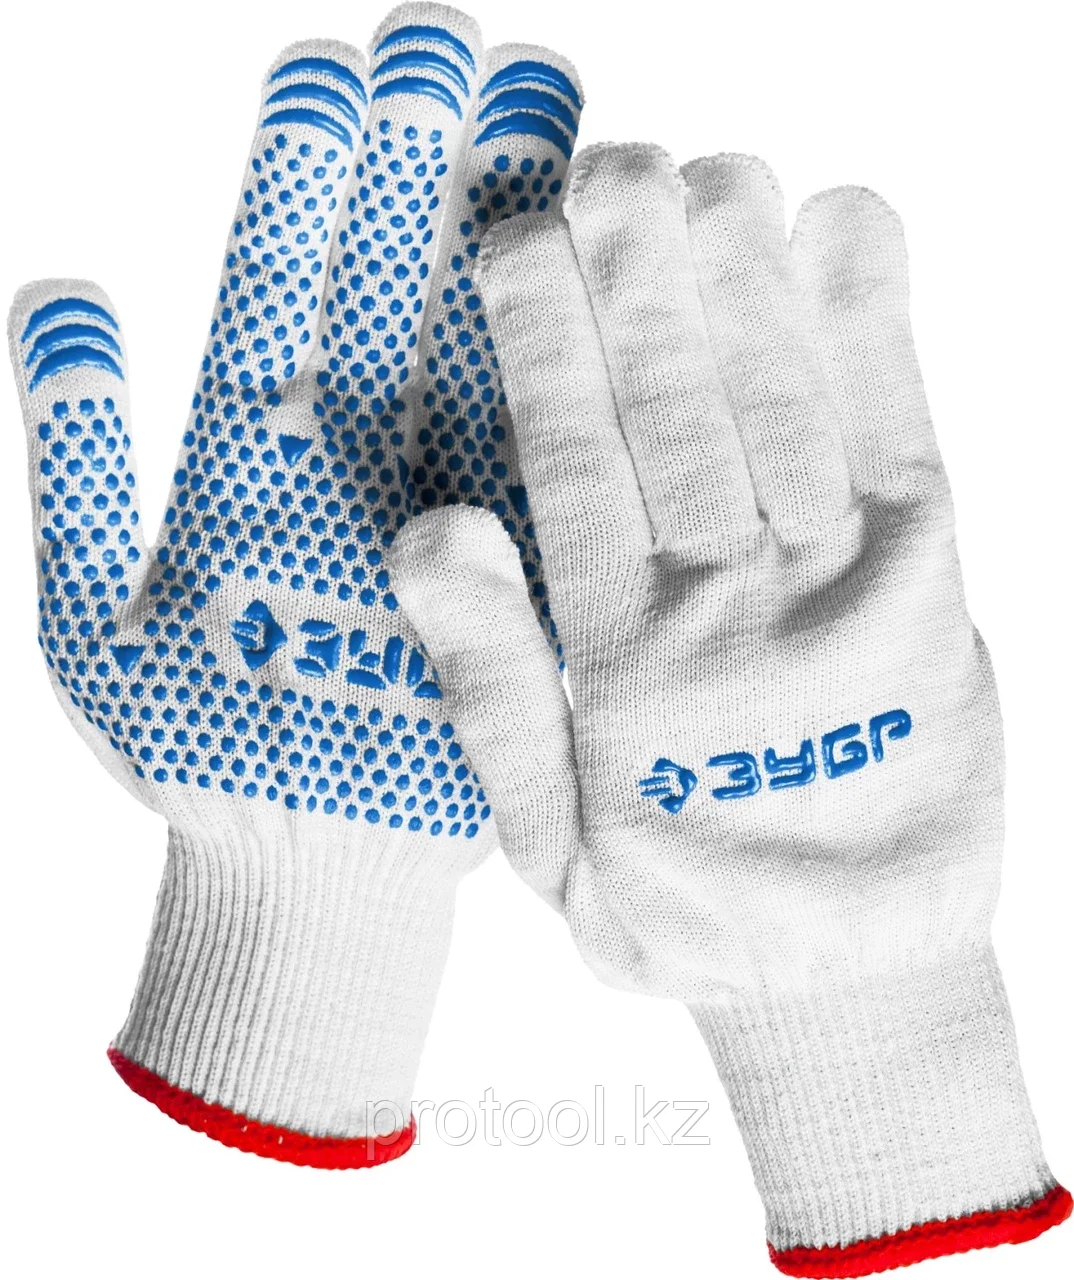 ЗУБР S-M, 13 класс, х/б, перчатки с точками увеличенного размера, с ПВХ-гель покрытием (точка) 11451-S2